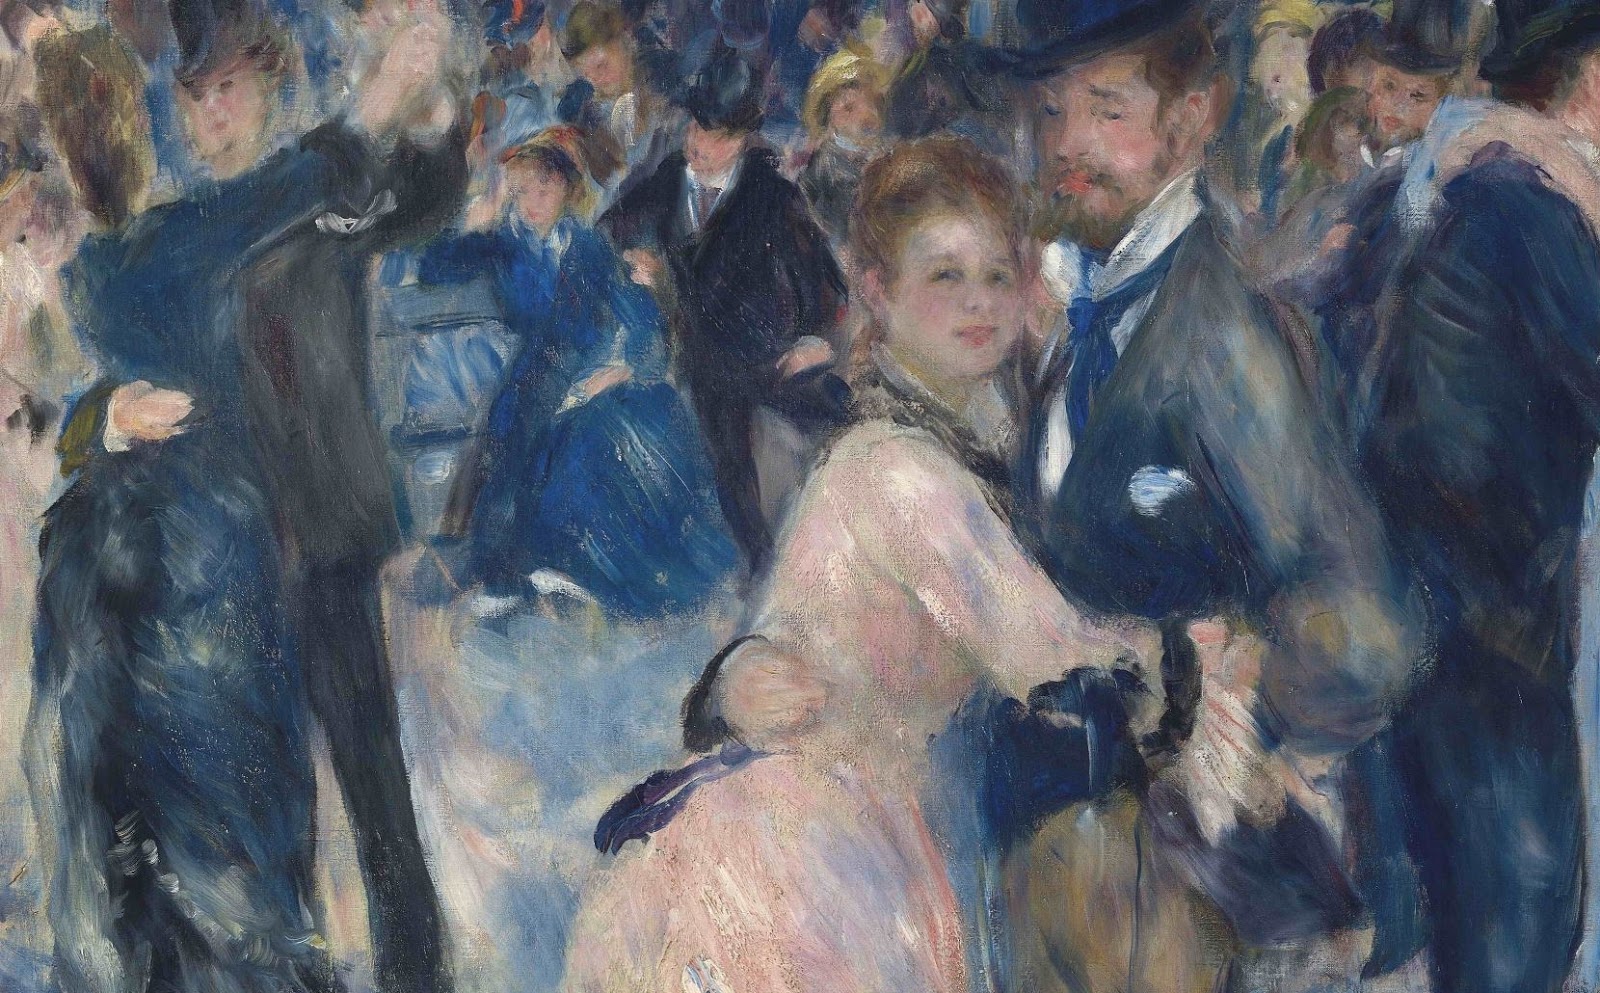 Pierre+Auguste+Renoir-1841-1-19 (433).JPG